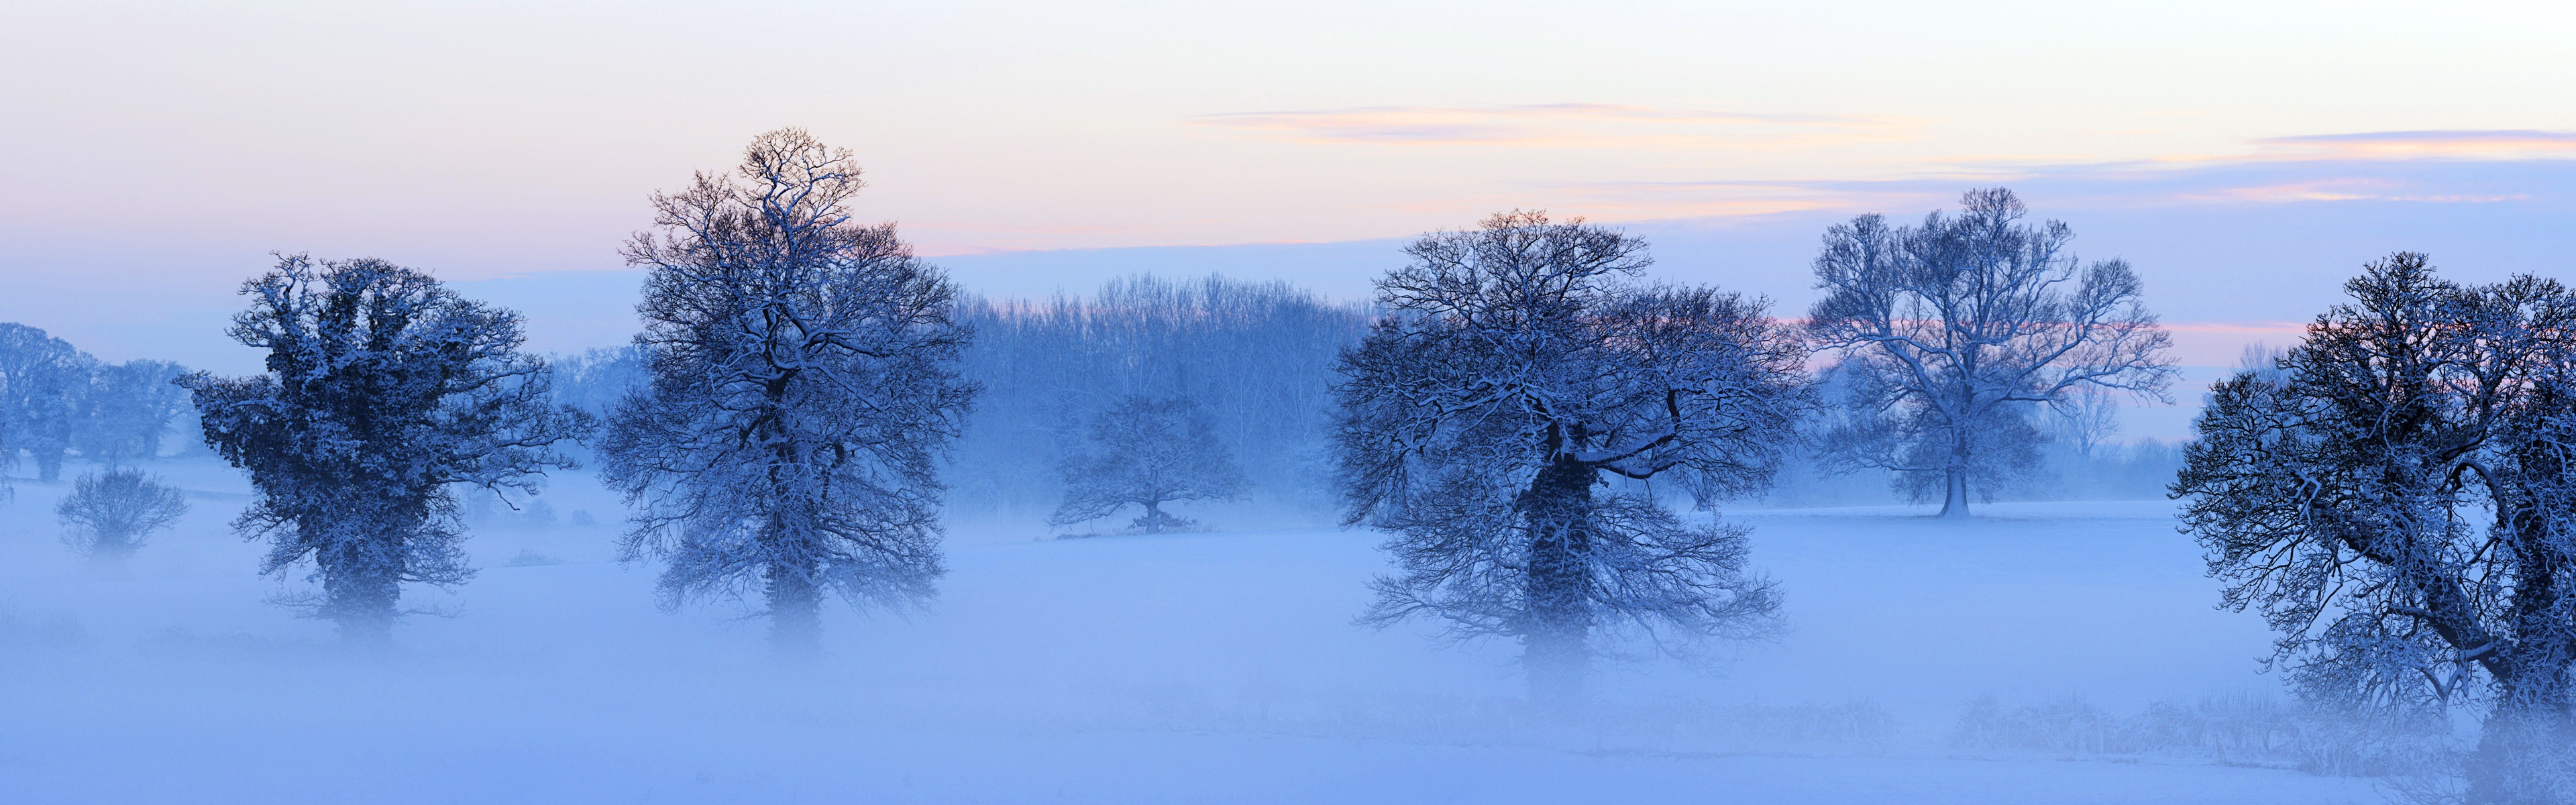 아름다운 추운 겨울 눈, 윈도우 8 파노라마 와이드 스크린 배경 화면 #6 - 3840x1200